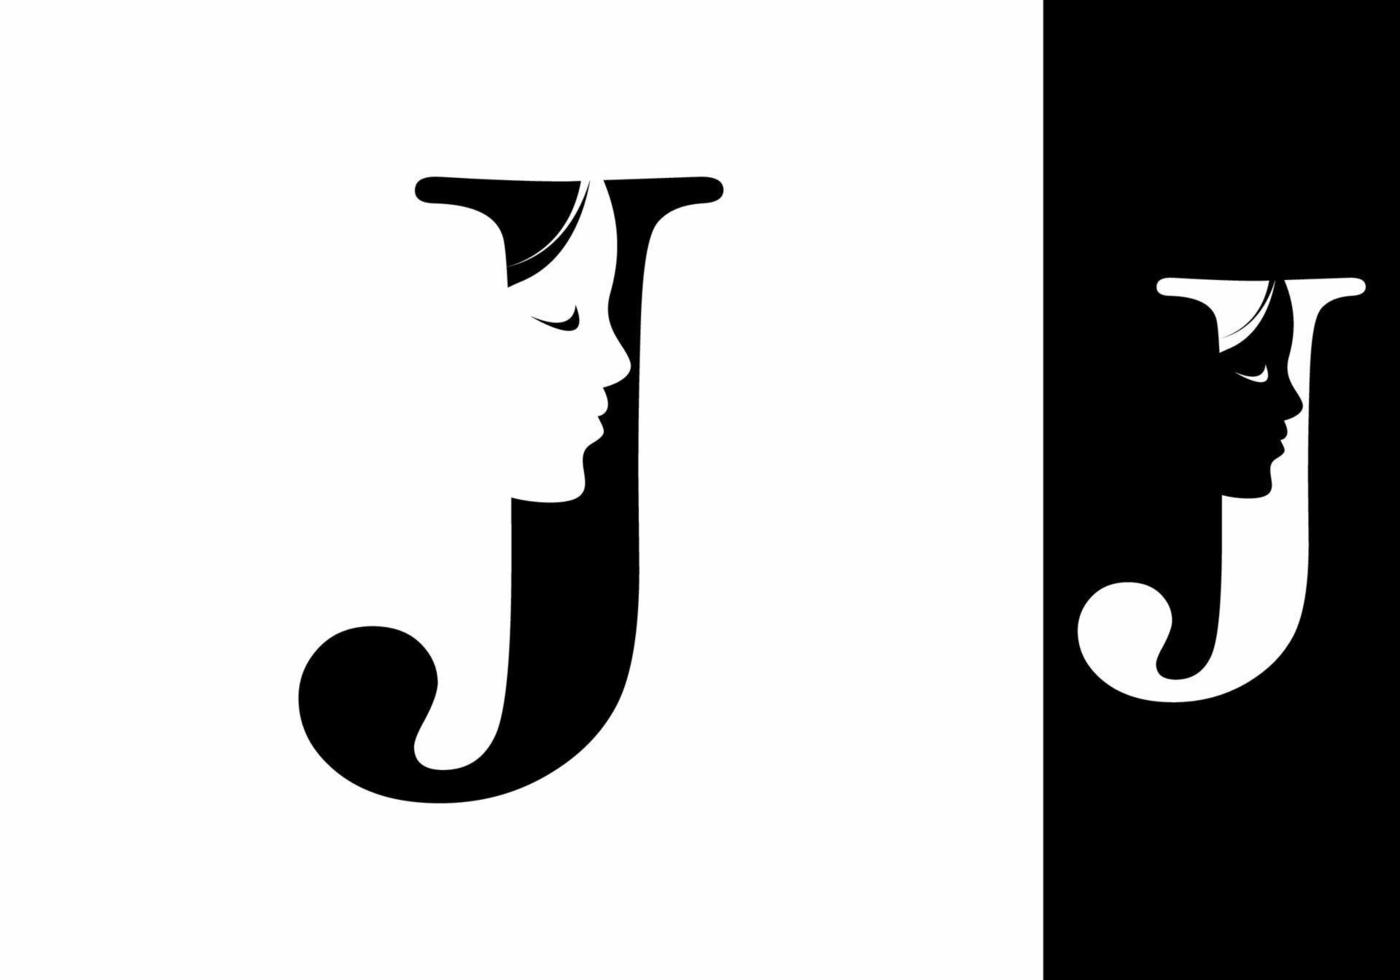 Schwarz-Weiß-J-Anfangsbuchstabe mit Silhouette des Frauengesichts vektor